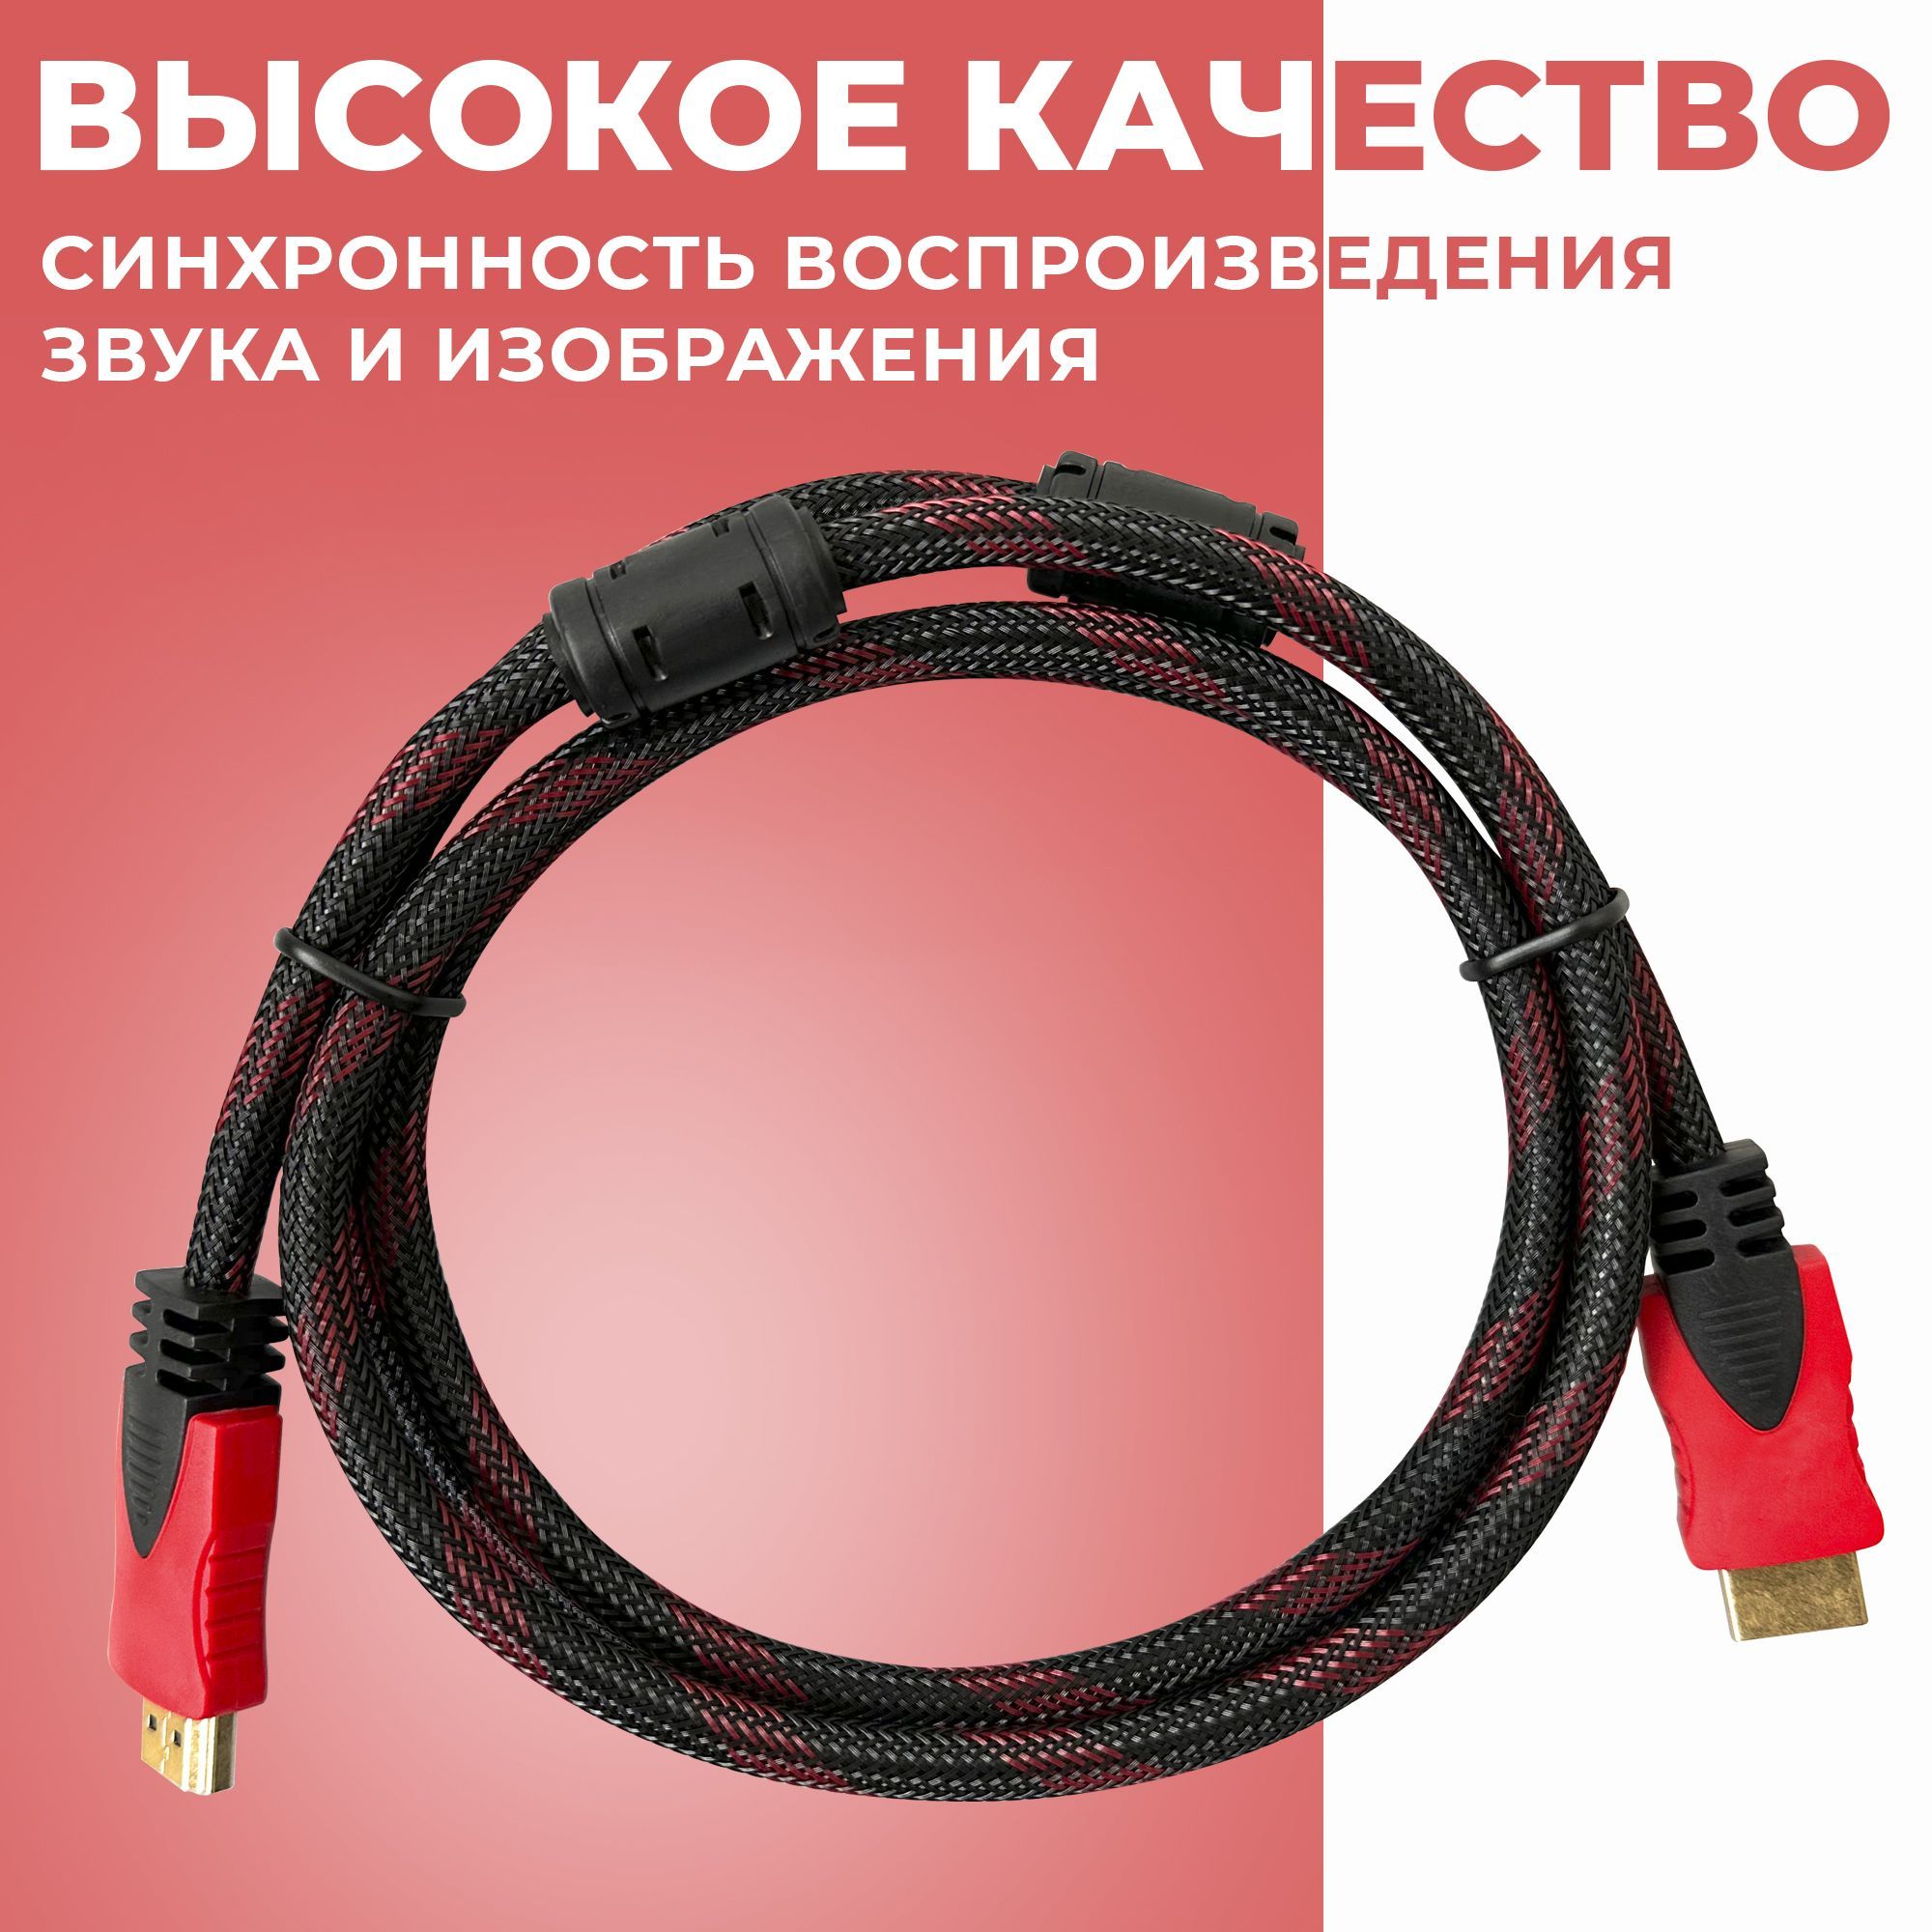 Кабель HDMI redoro. HDMI кабель BRED RedOr -  по низкой цене в .